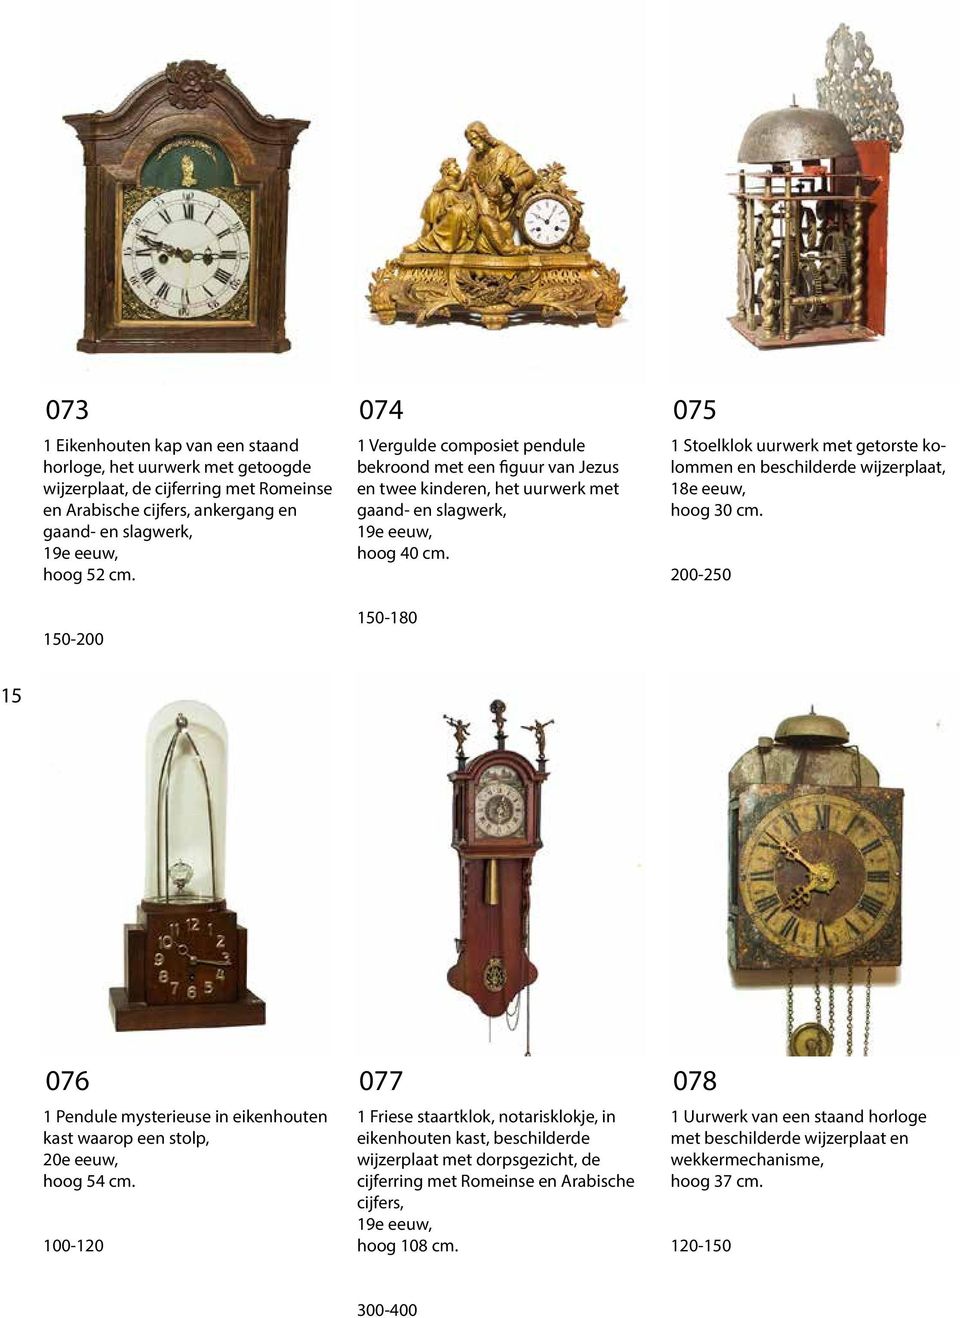 150-180 075 1 Stoelklok uurwerk met getorste kolommen en beschilderde wijzerplaat, 18e eeuw, hoog 30 cm.